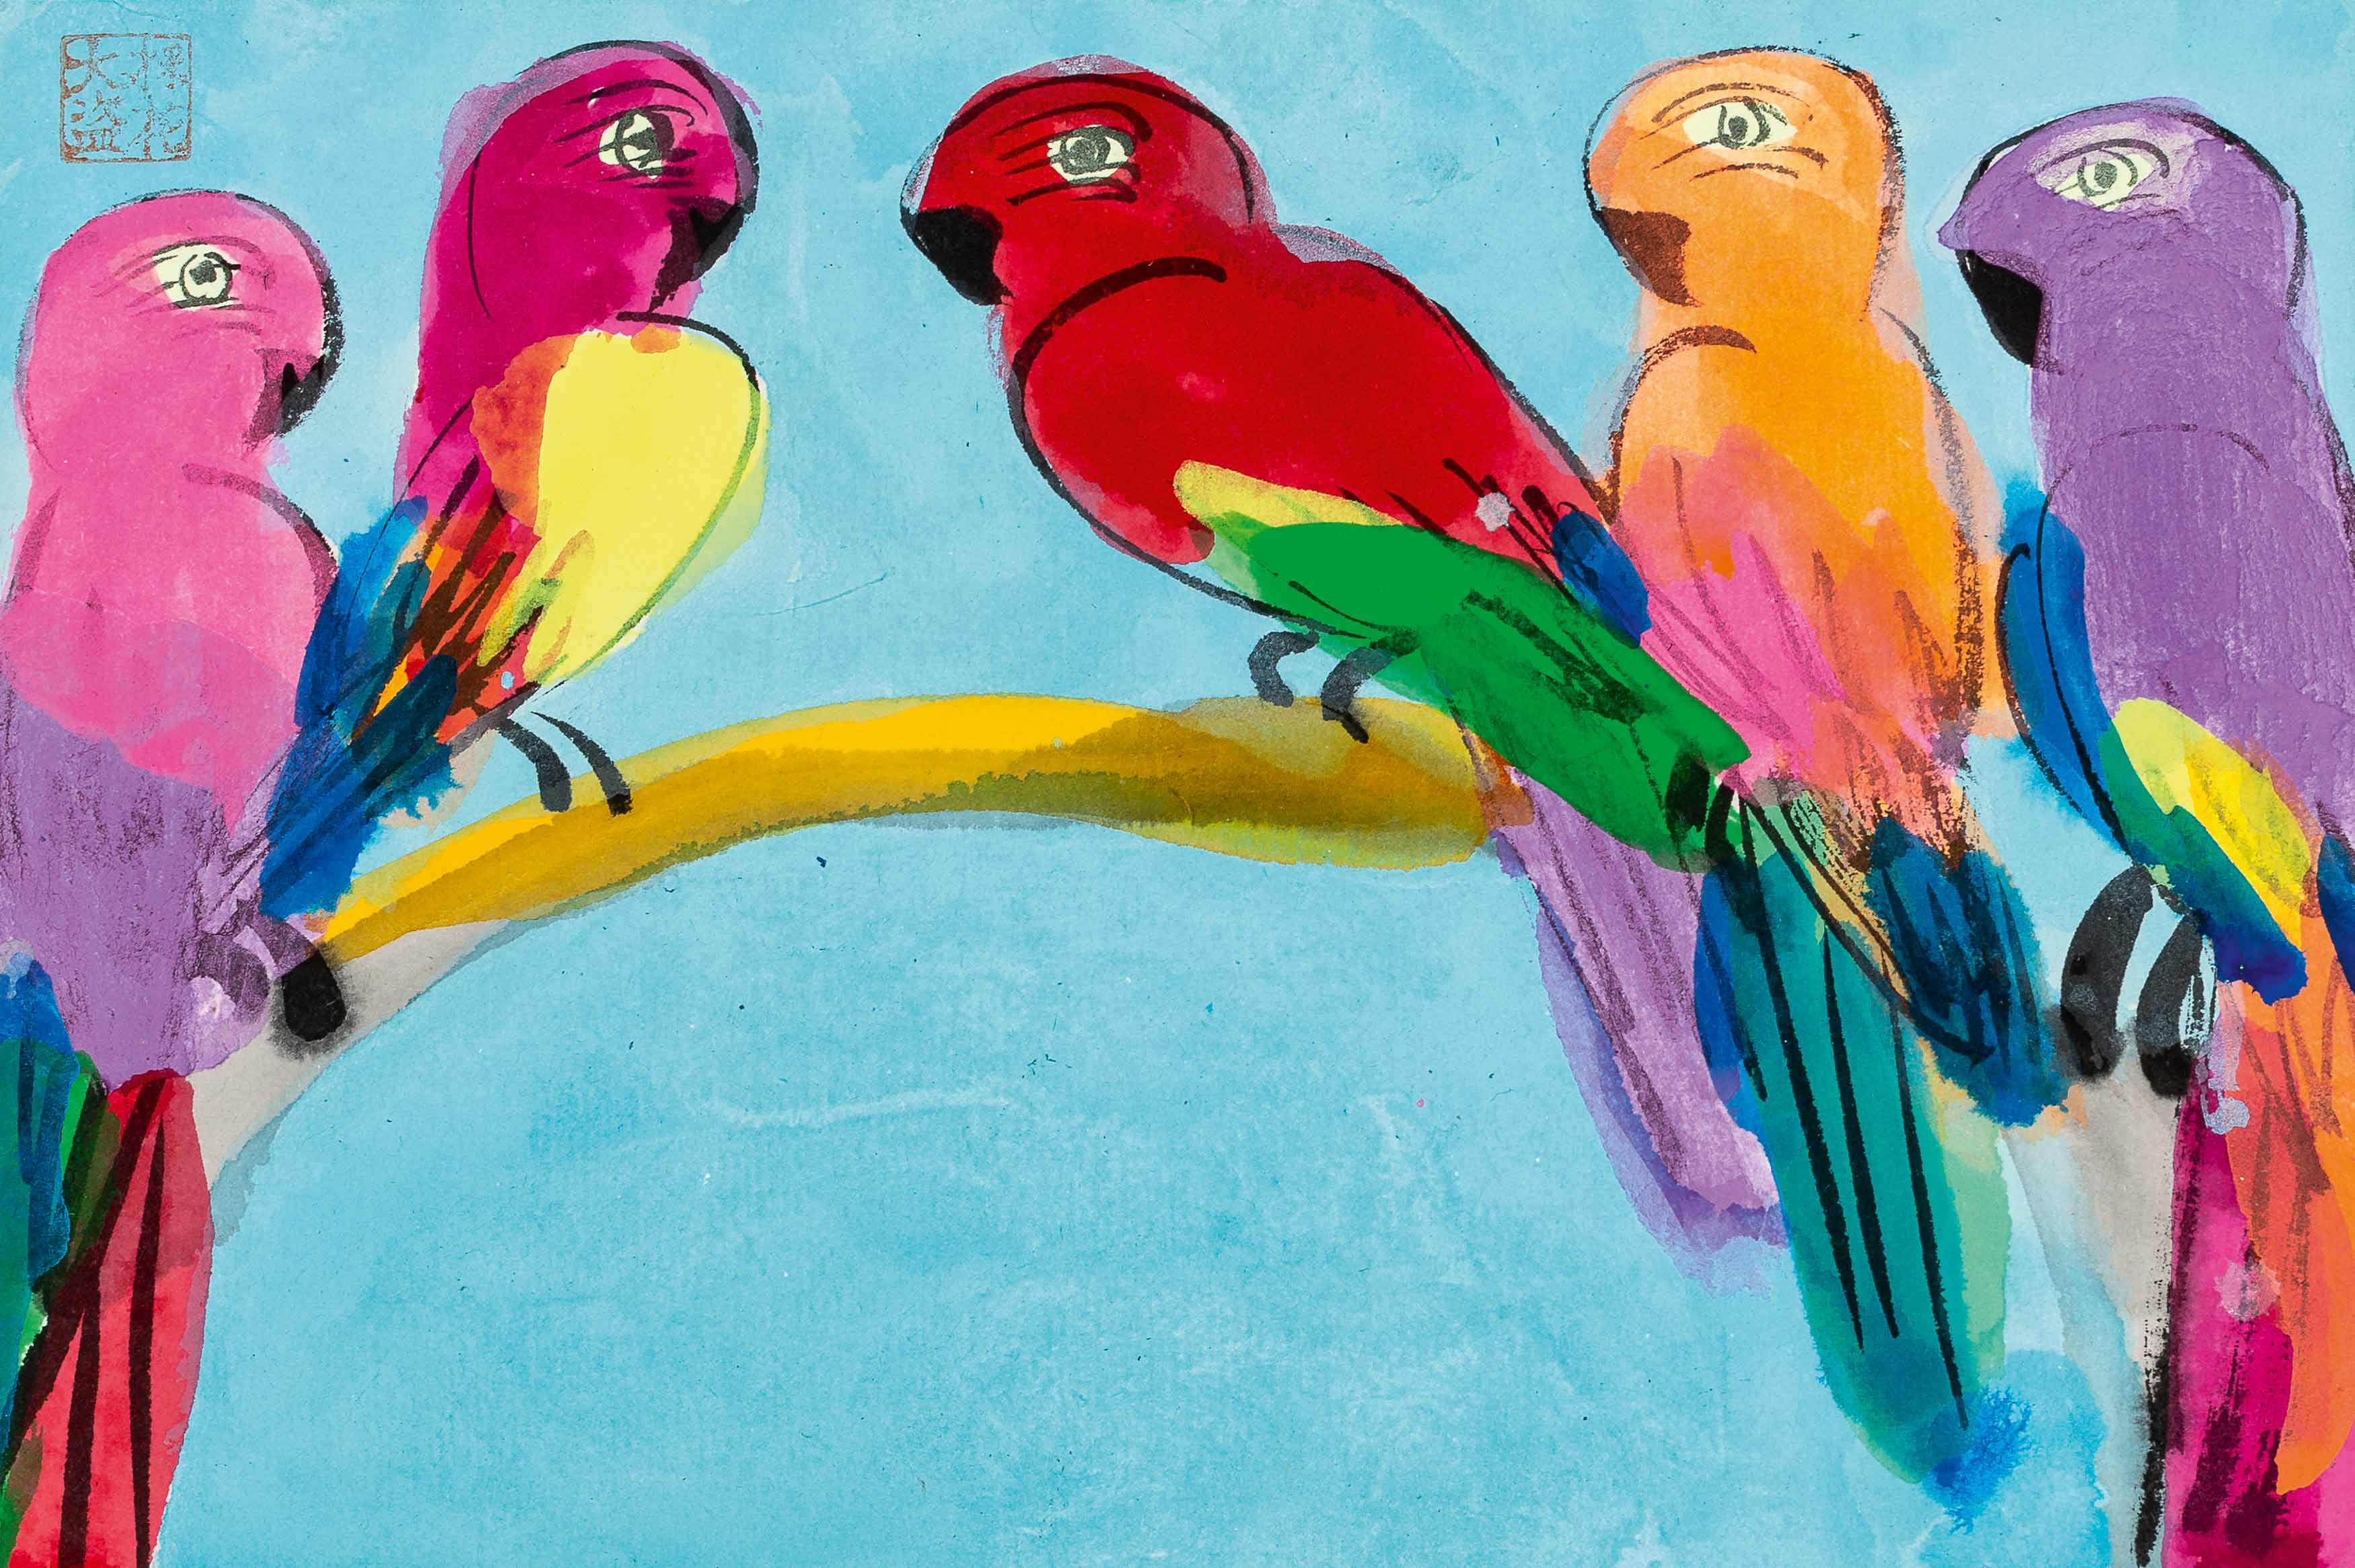 Five parrots